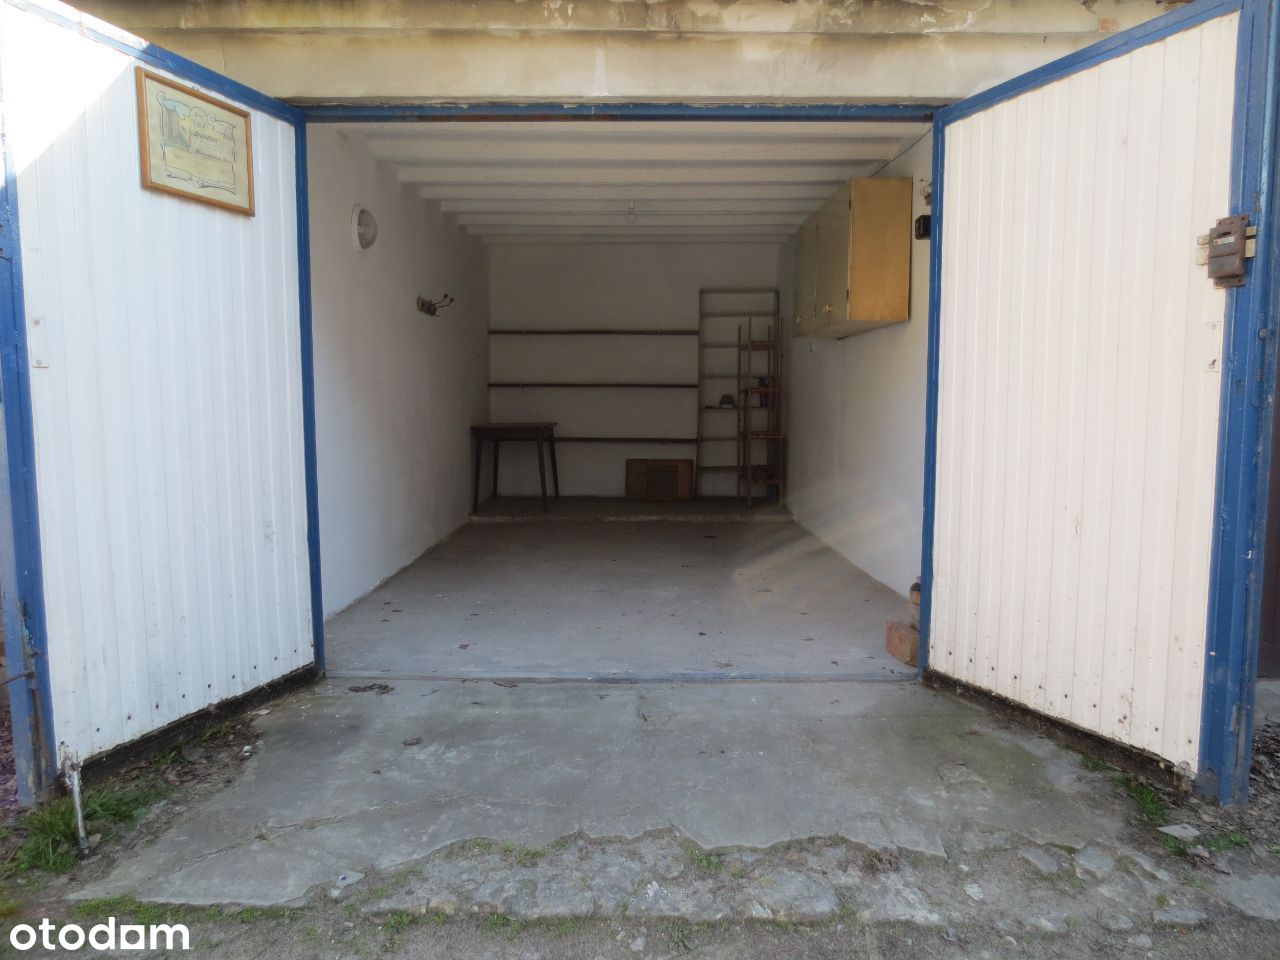 Garaż murowany na wynajem, ul. Poznańska